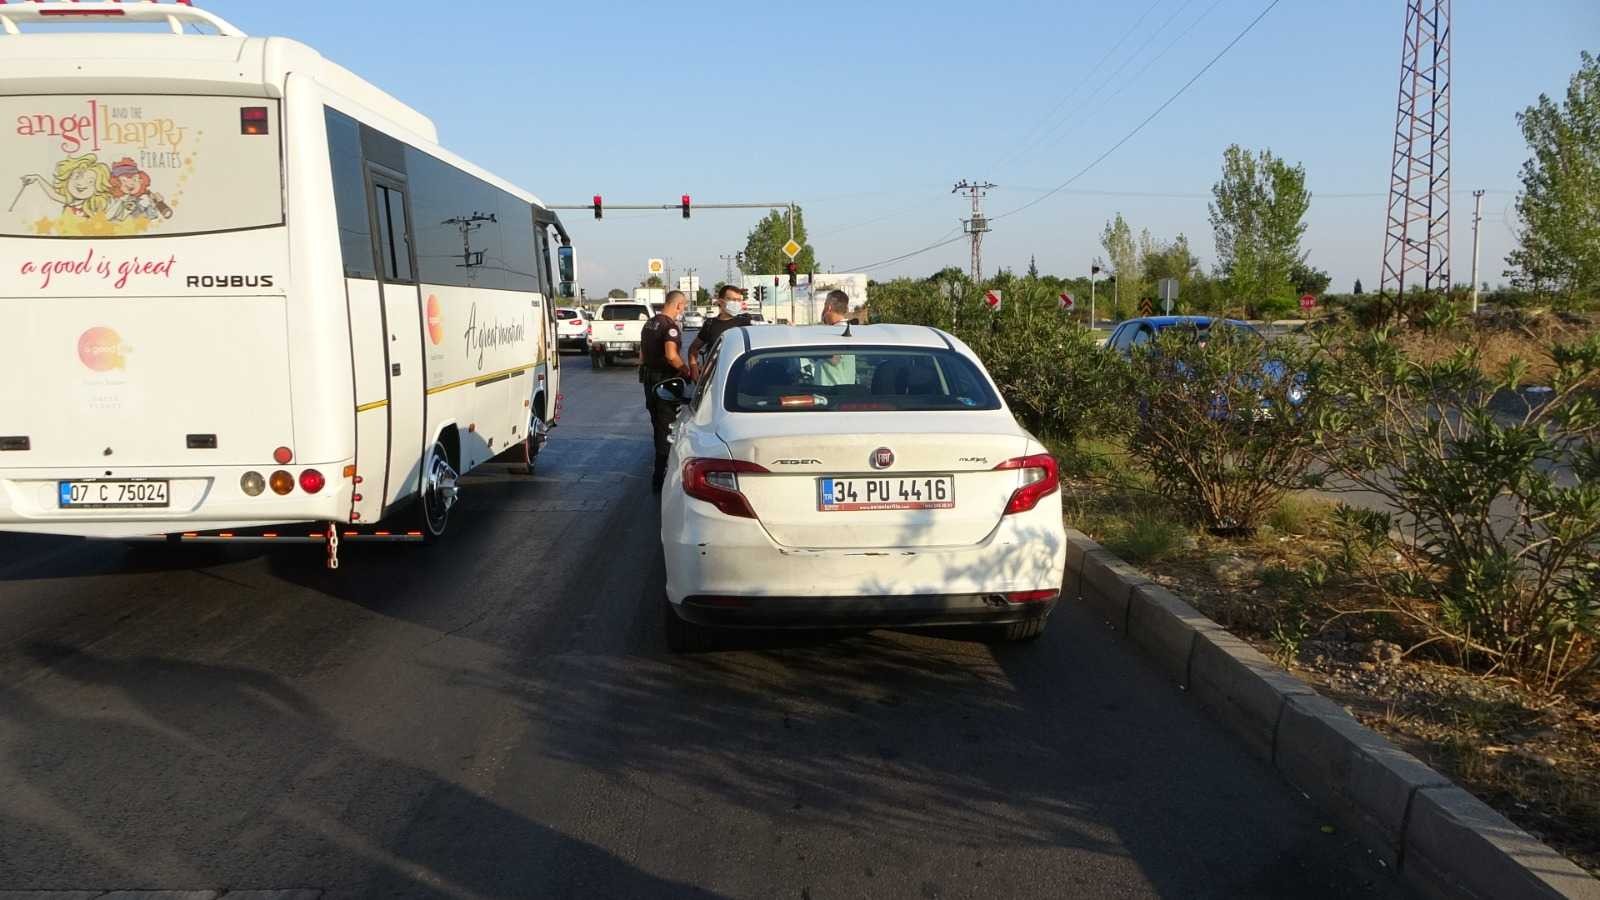 Rent a car firmasından kiralayıp çalıntı ihbarında bulunduğu aracın içinde yakalandı #antalya